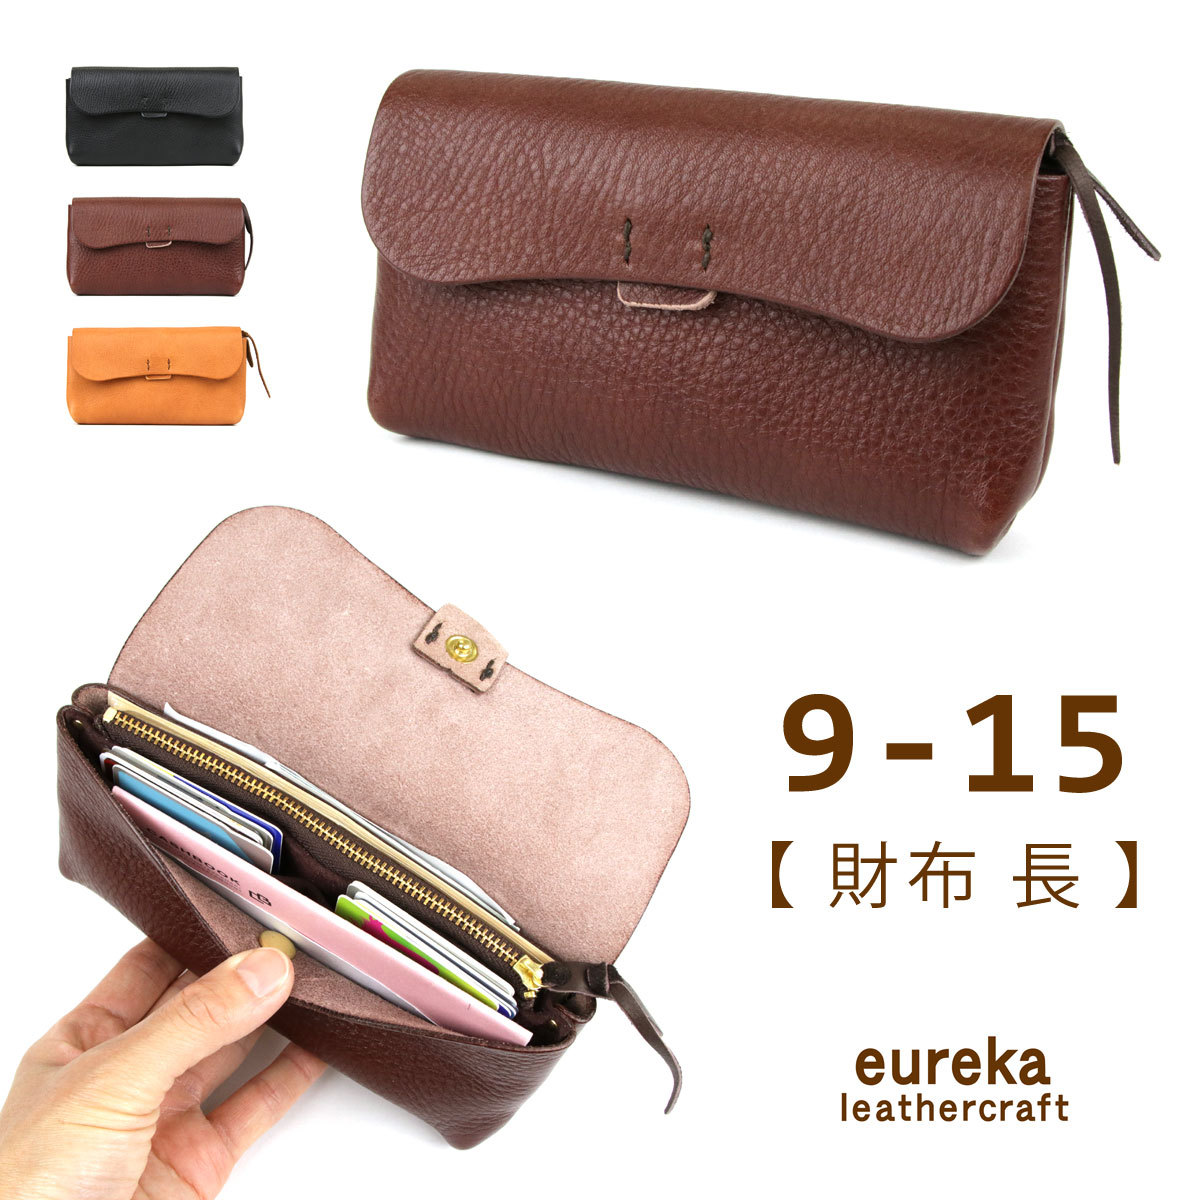 本革財布 長財布 中央ファスナー【財布9-15】日本製 シボ革 eureka